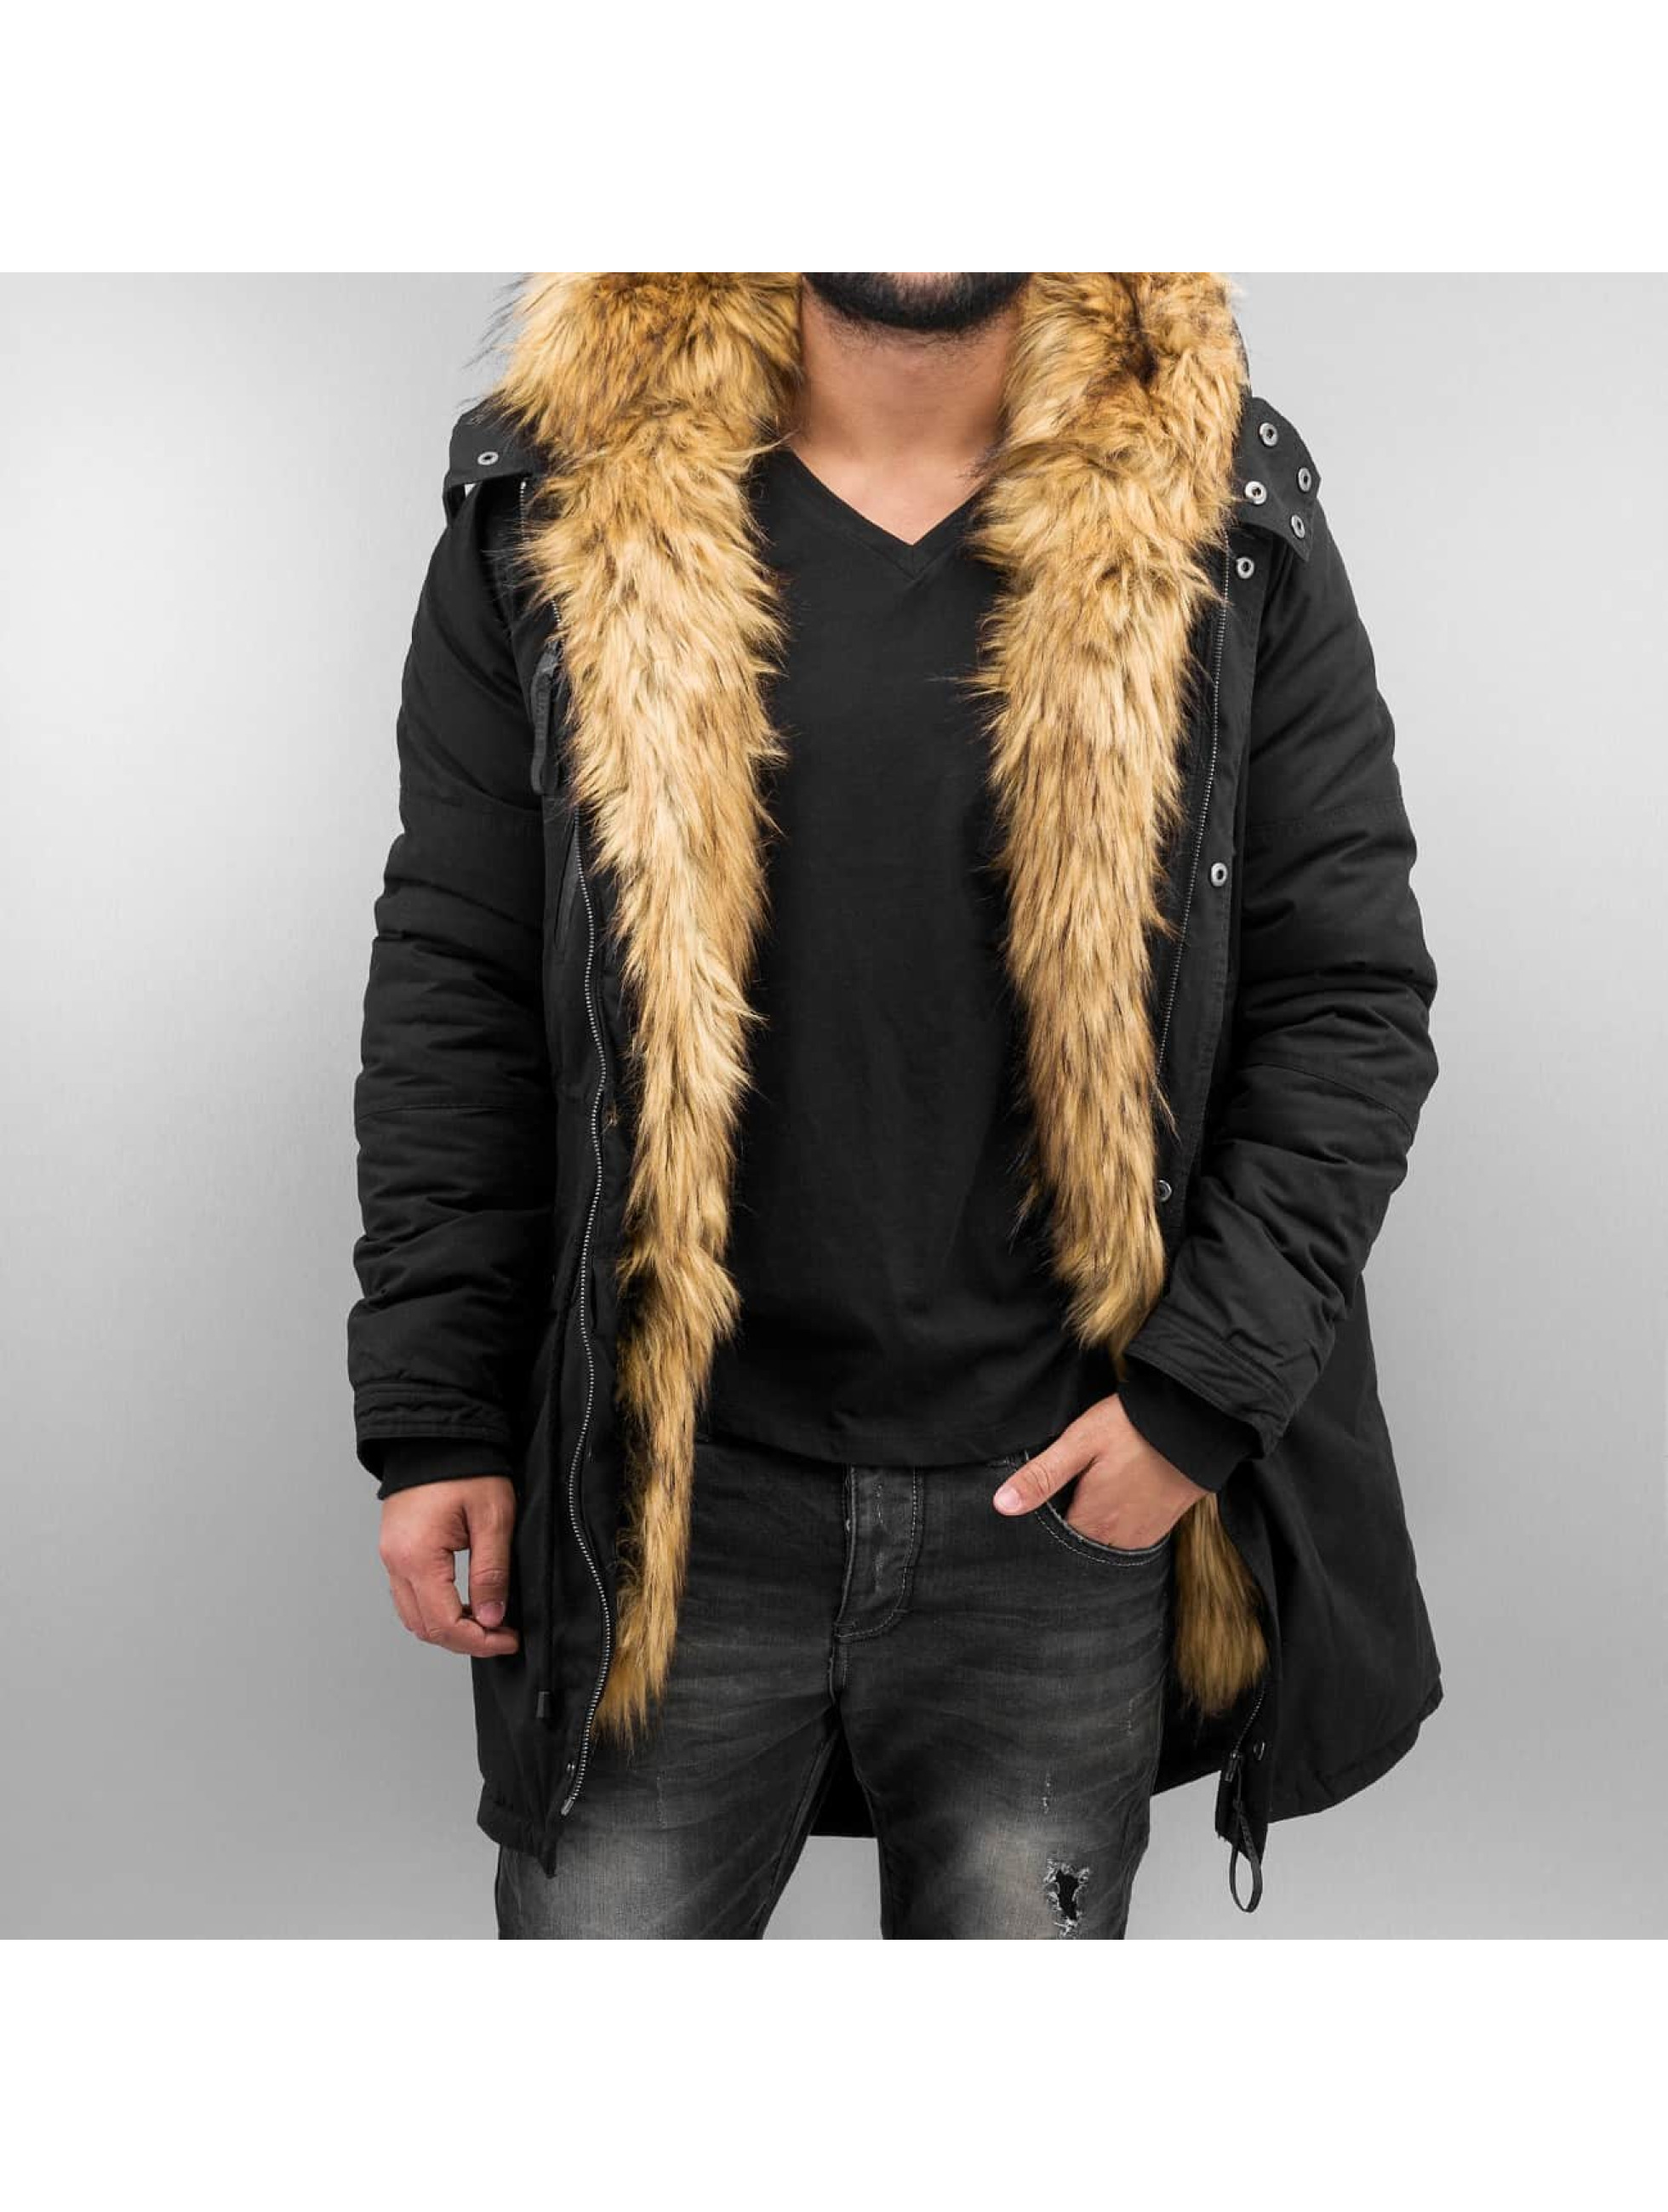 Mantel Fur in schwarz